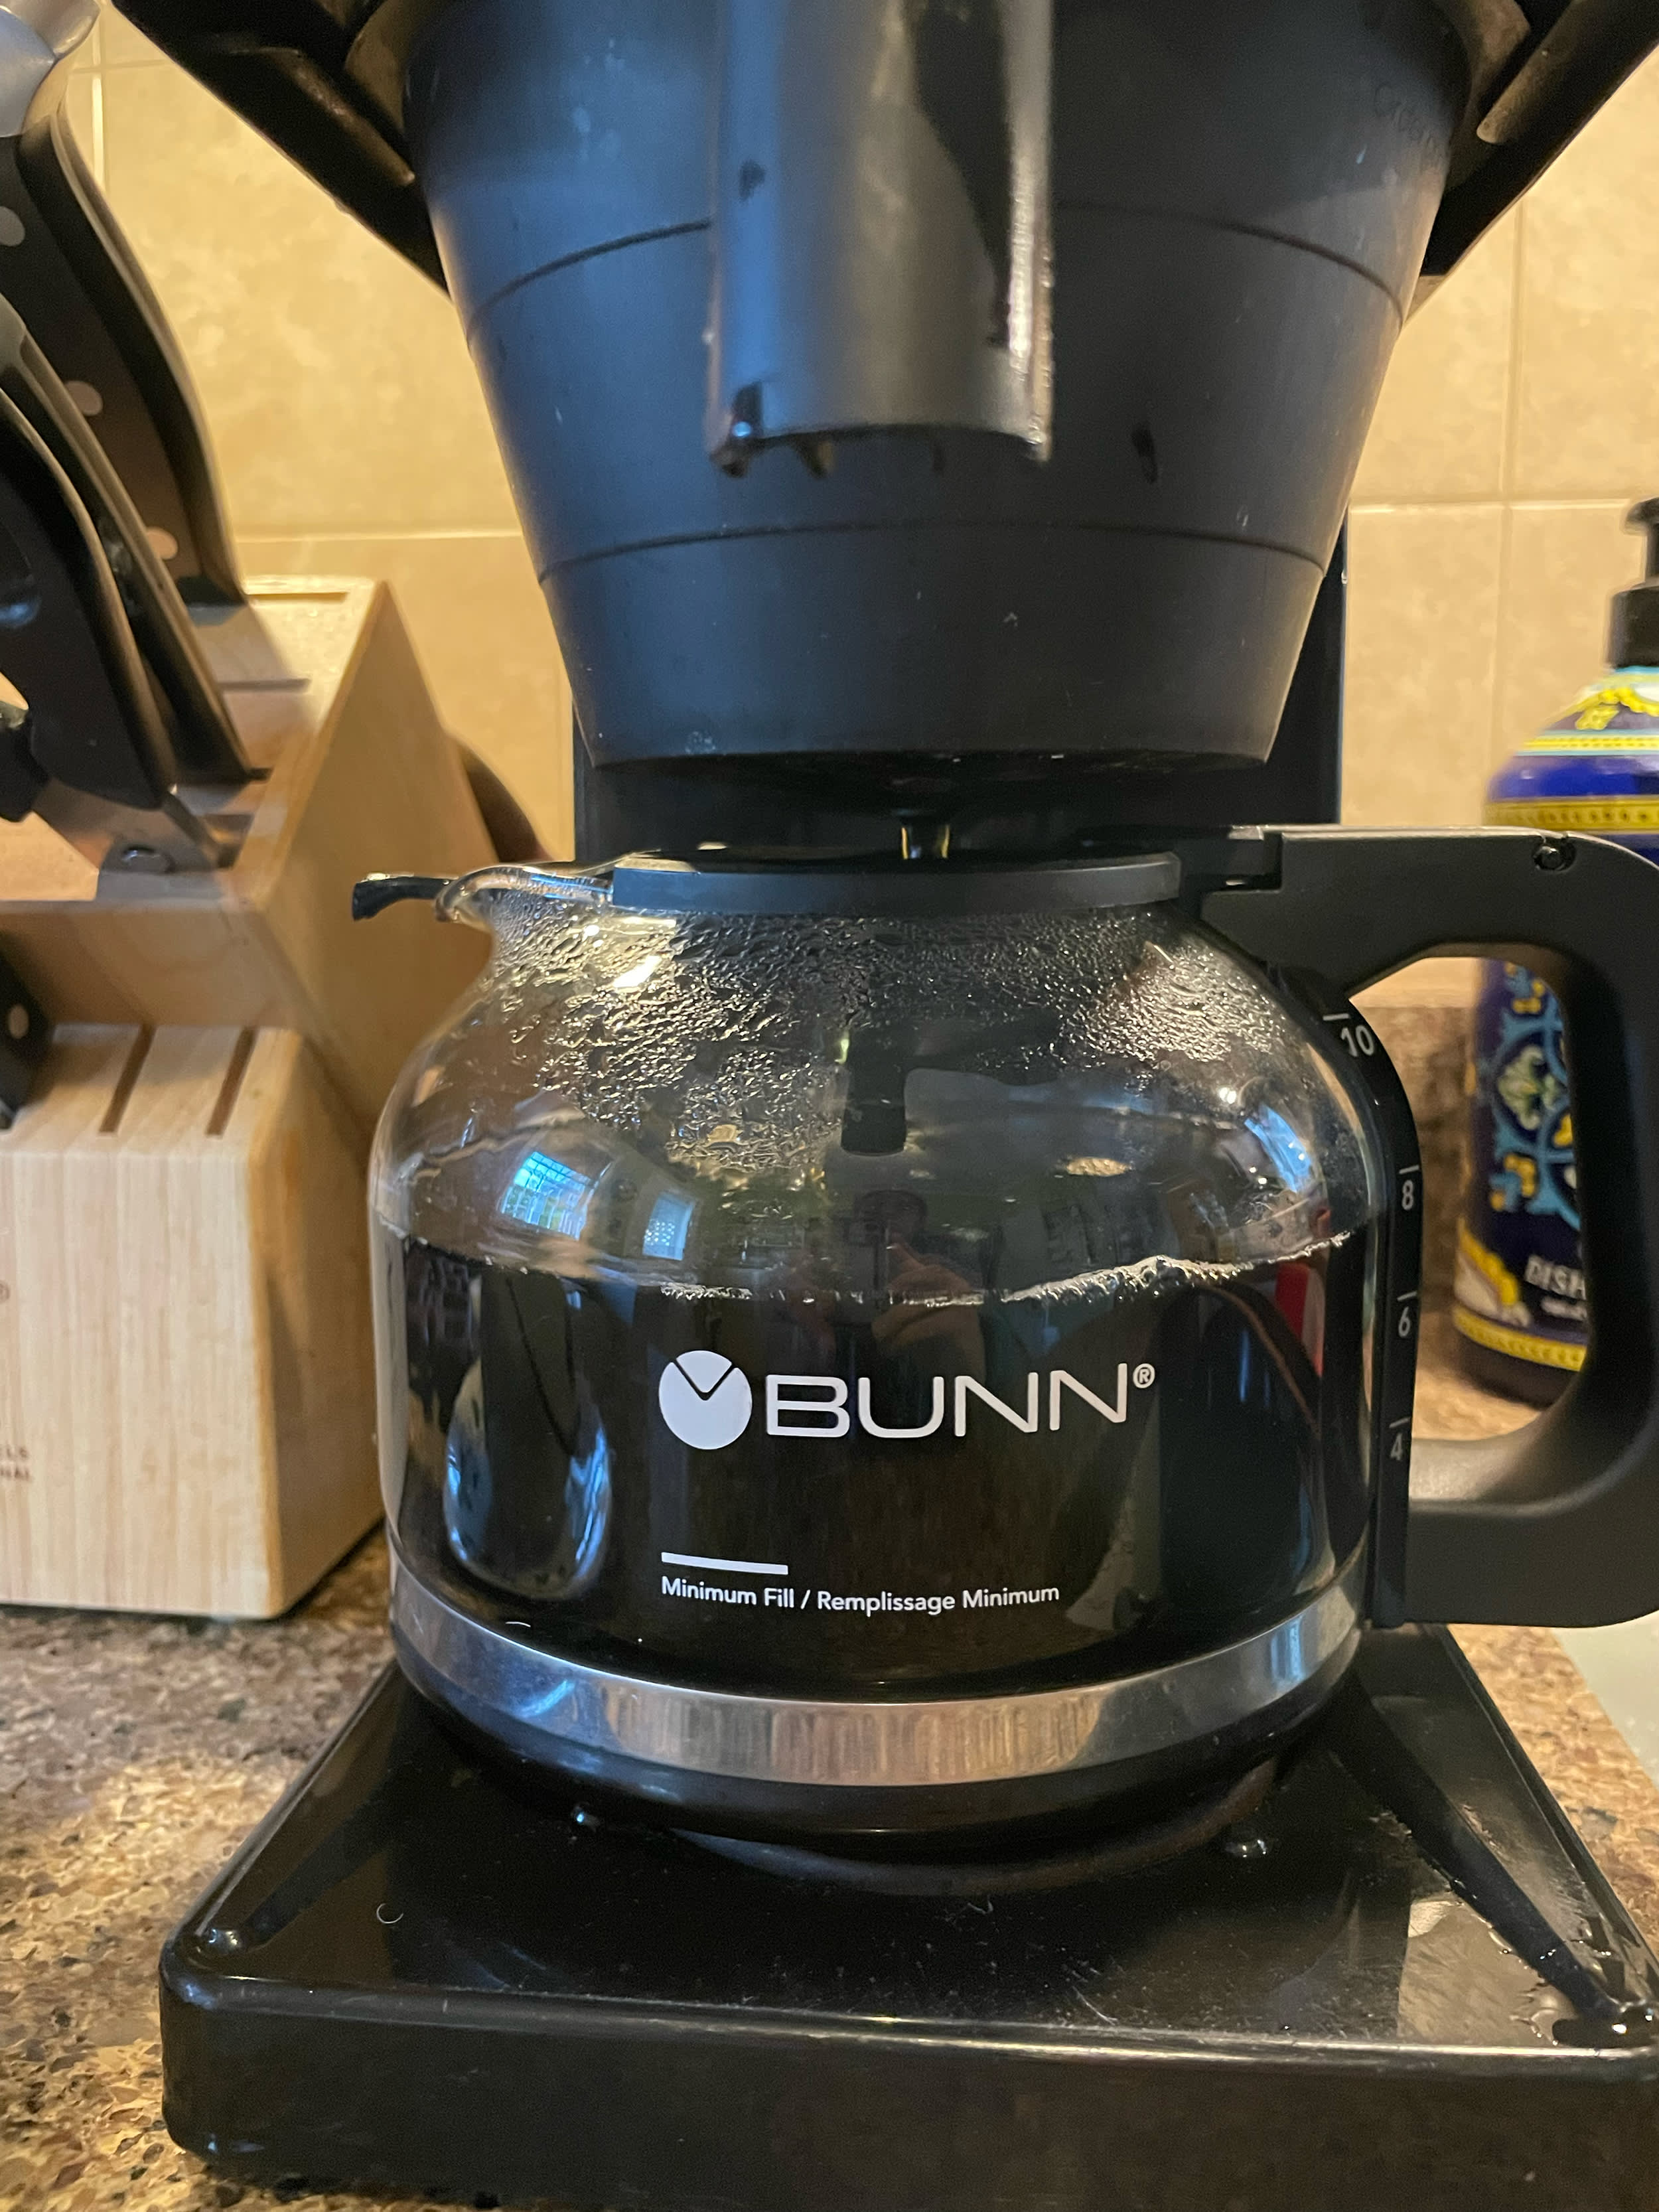 https://cdn.apartmenttherapy.info/image/upload/v1684442752/k/Edit/2023-05-love-letter-bunn-coffee-maker/bunn-coffee-maker-7304.jpg